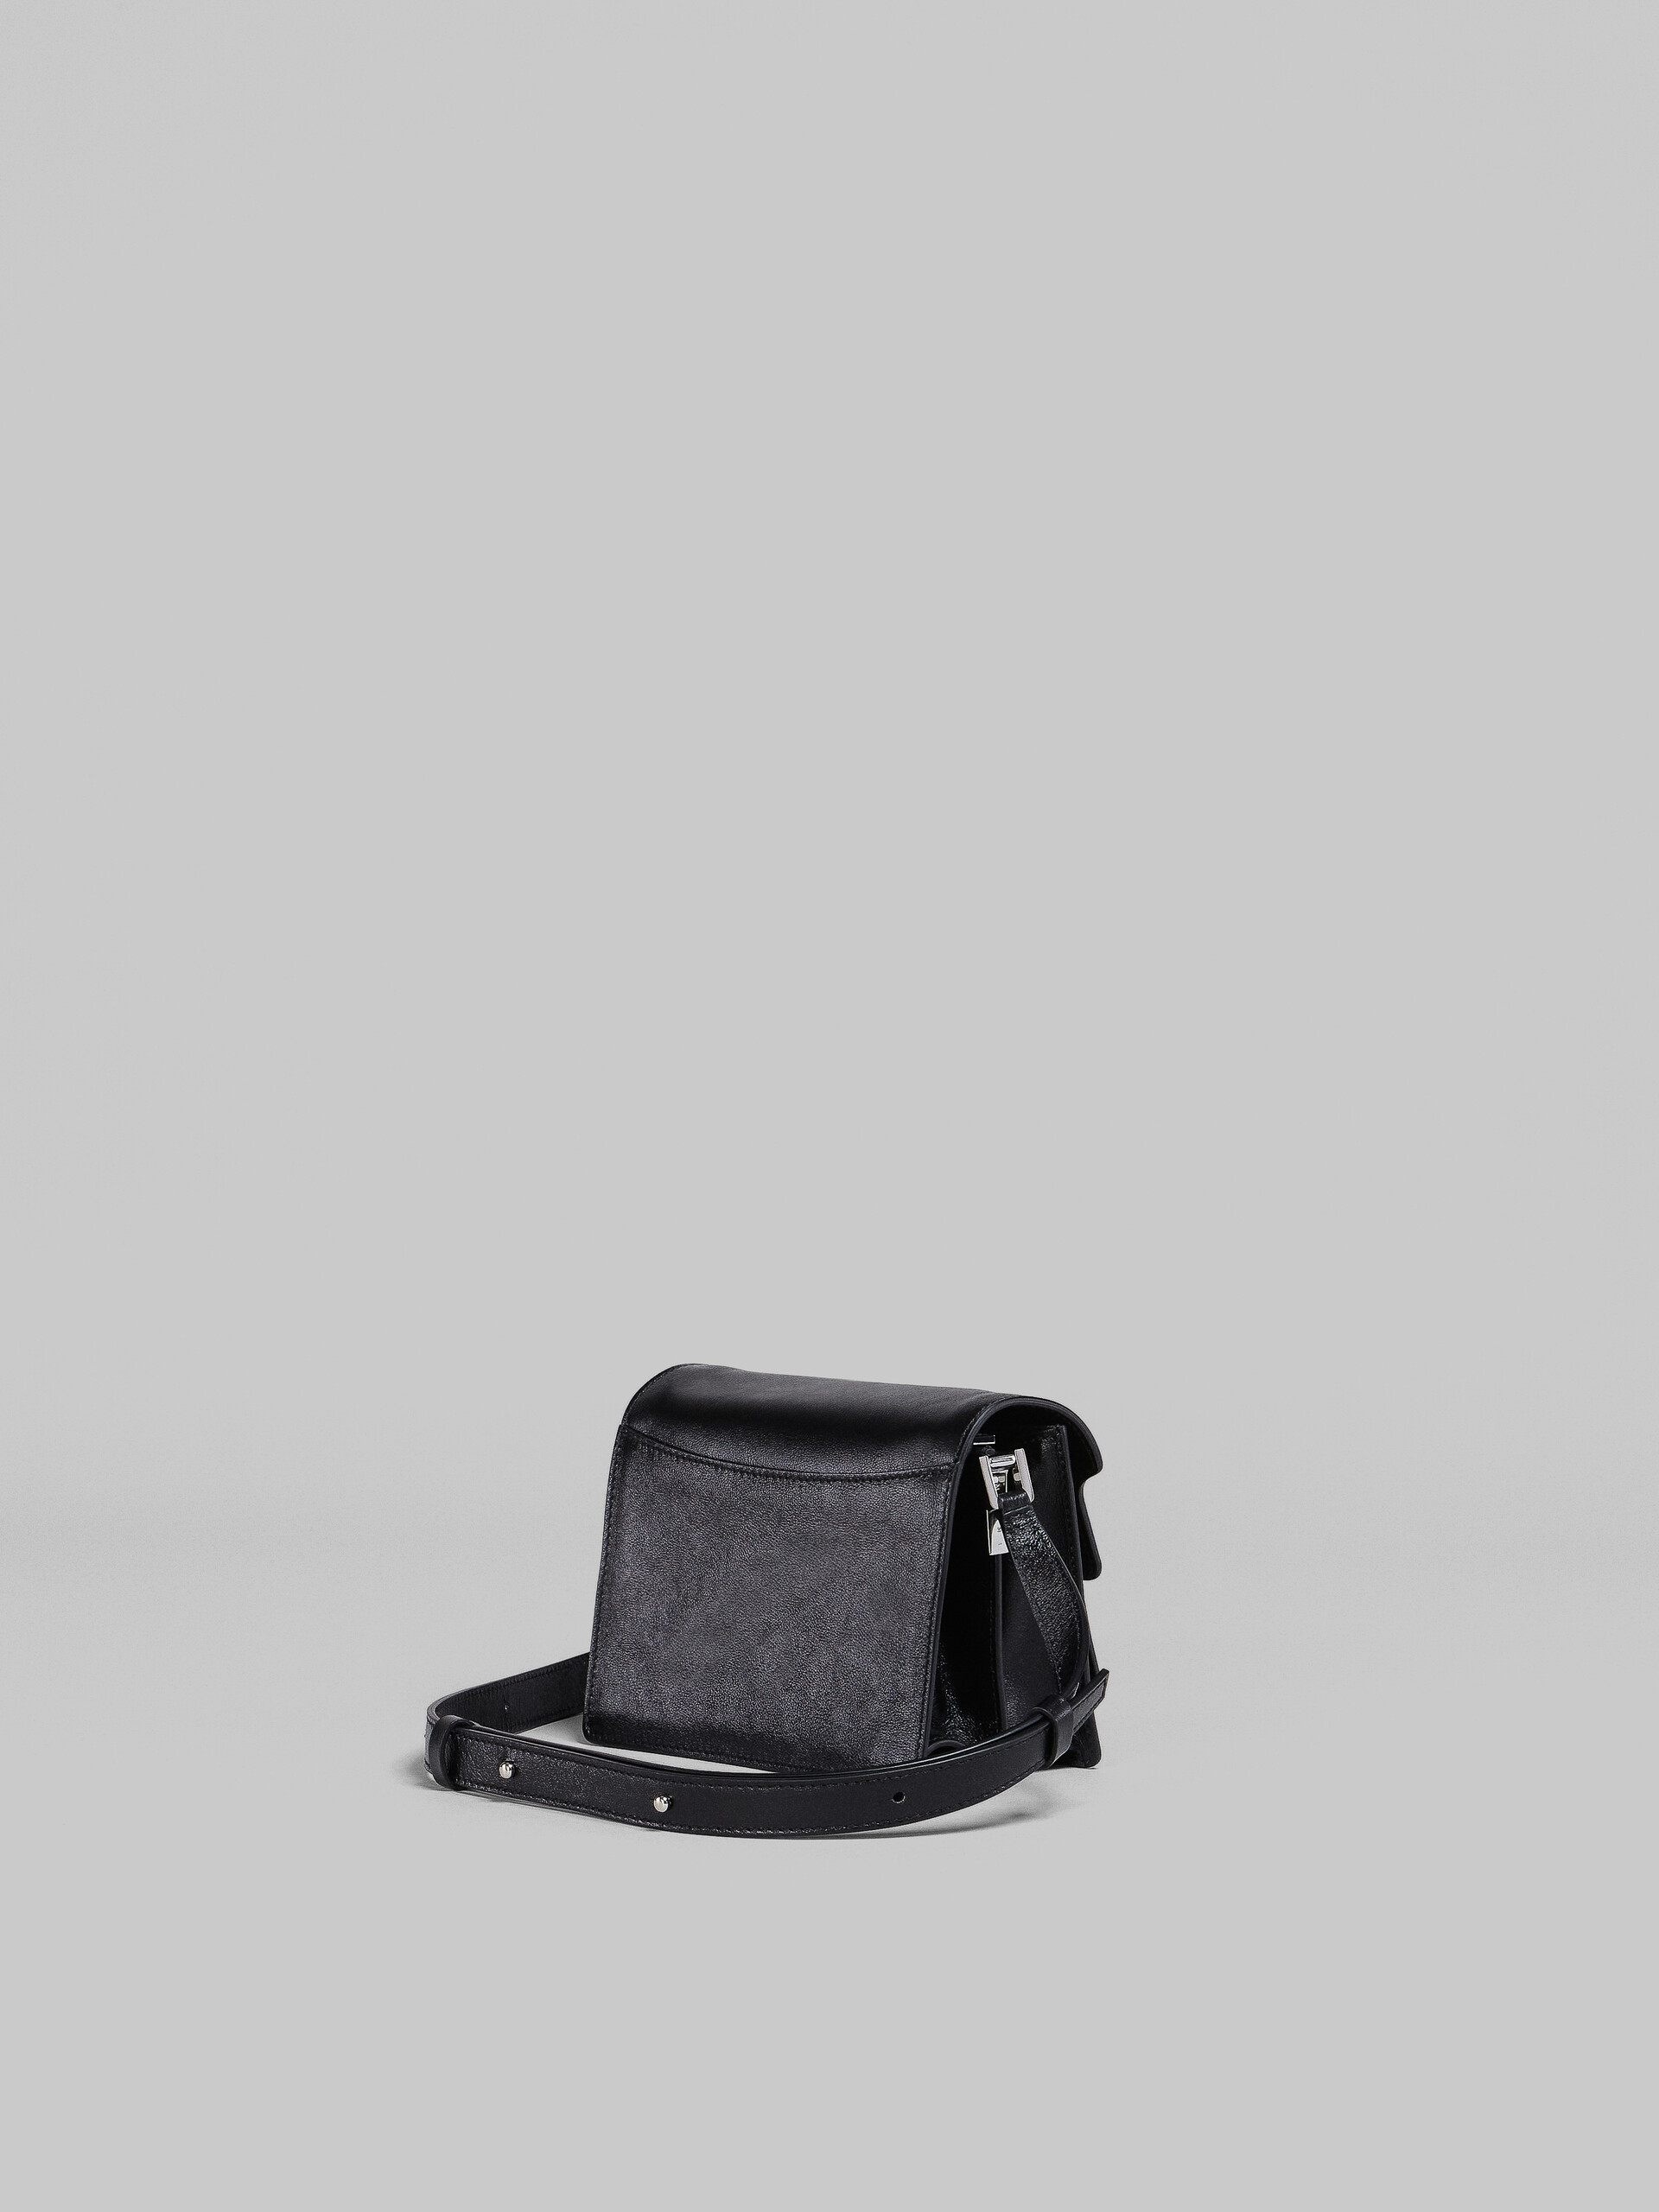 Trunk Soft Mini Bag in black leather - Shoulder Bag - Image 2